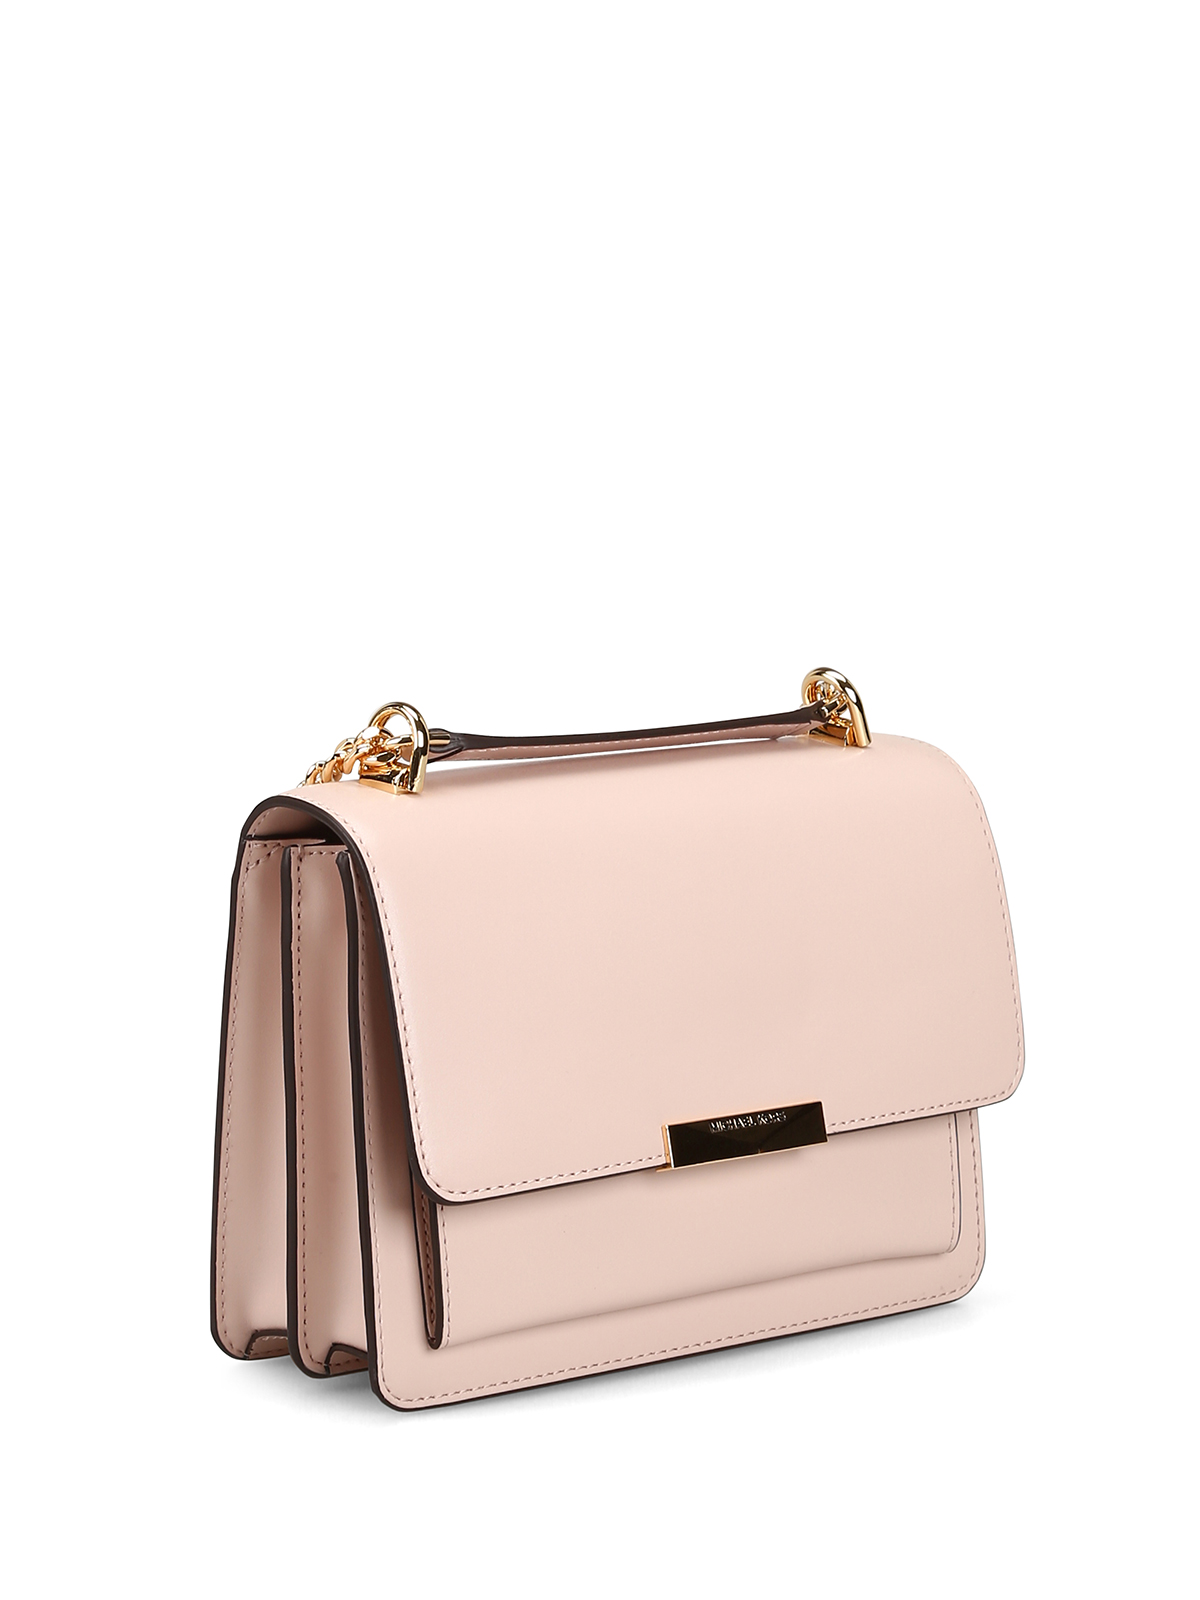 michael kors online shoulder bags jade l light pink smooth leather bag 00000158350f00s002